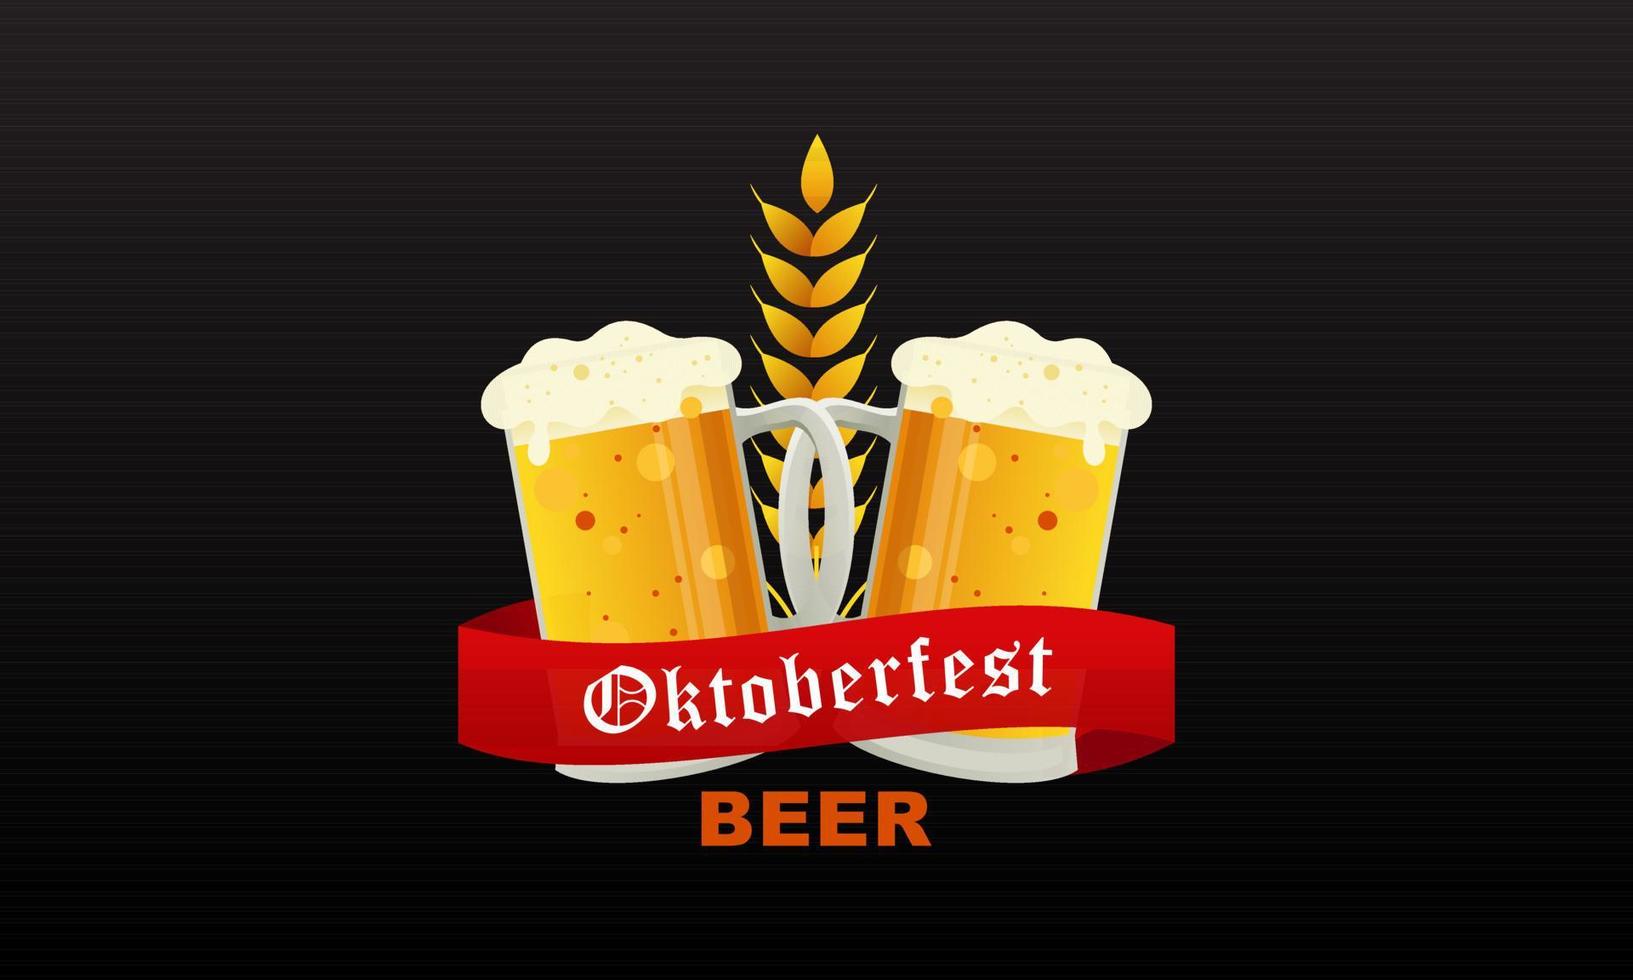 fond de festival de bière oktoberfest réaliste peut être utilisé pour le modèle daffiche vecteur